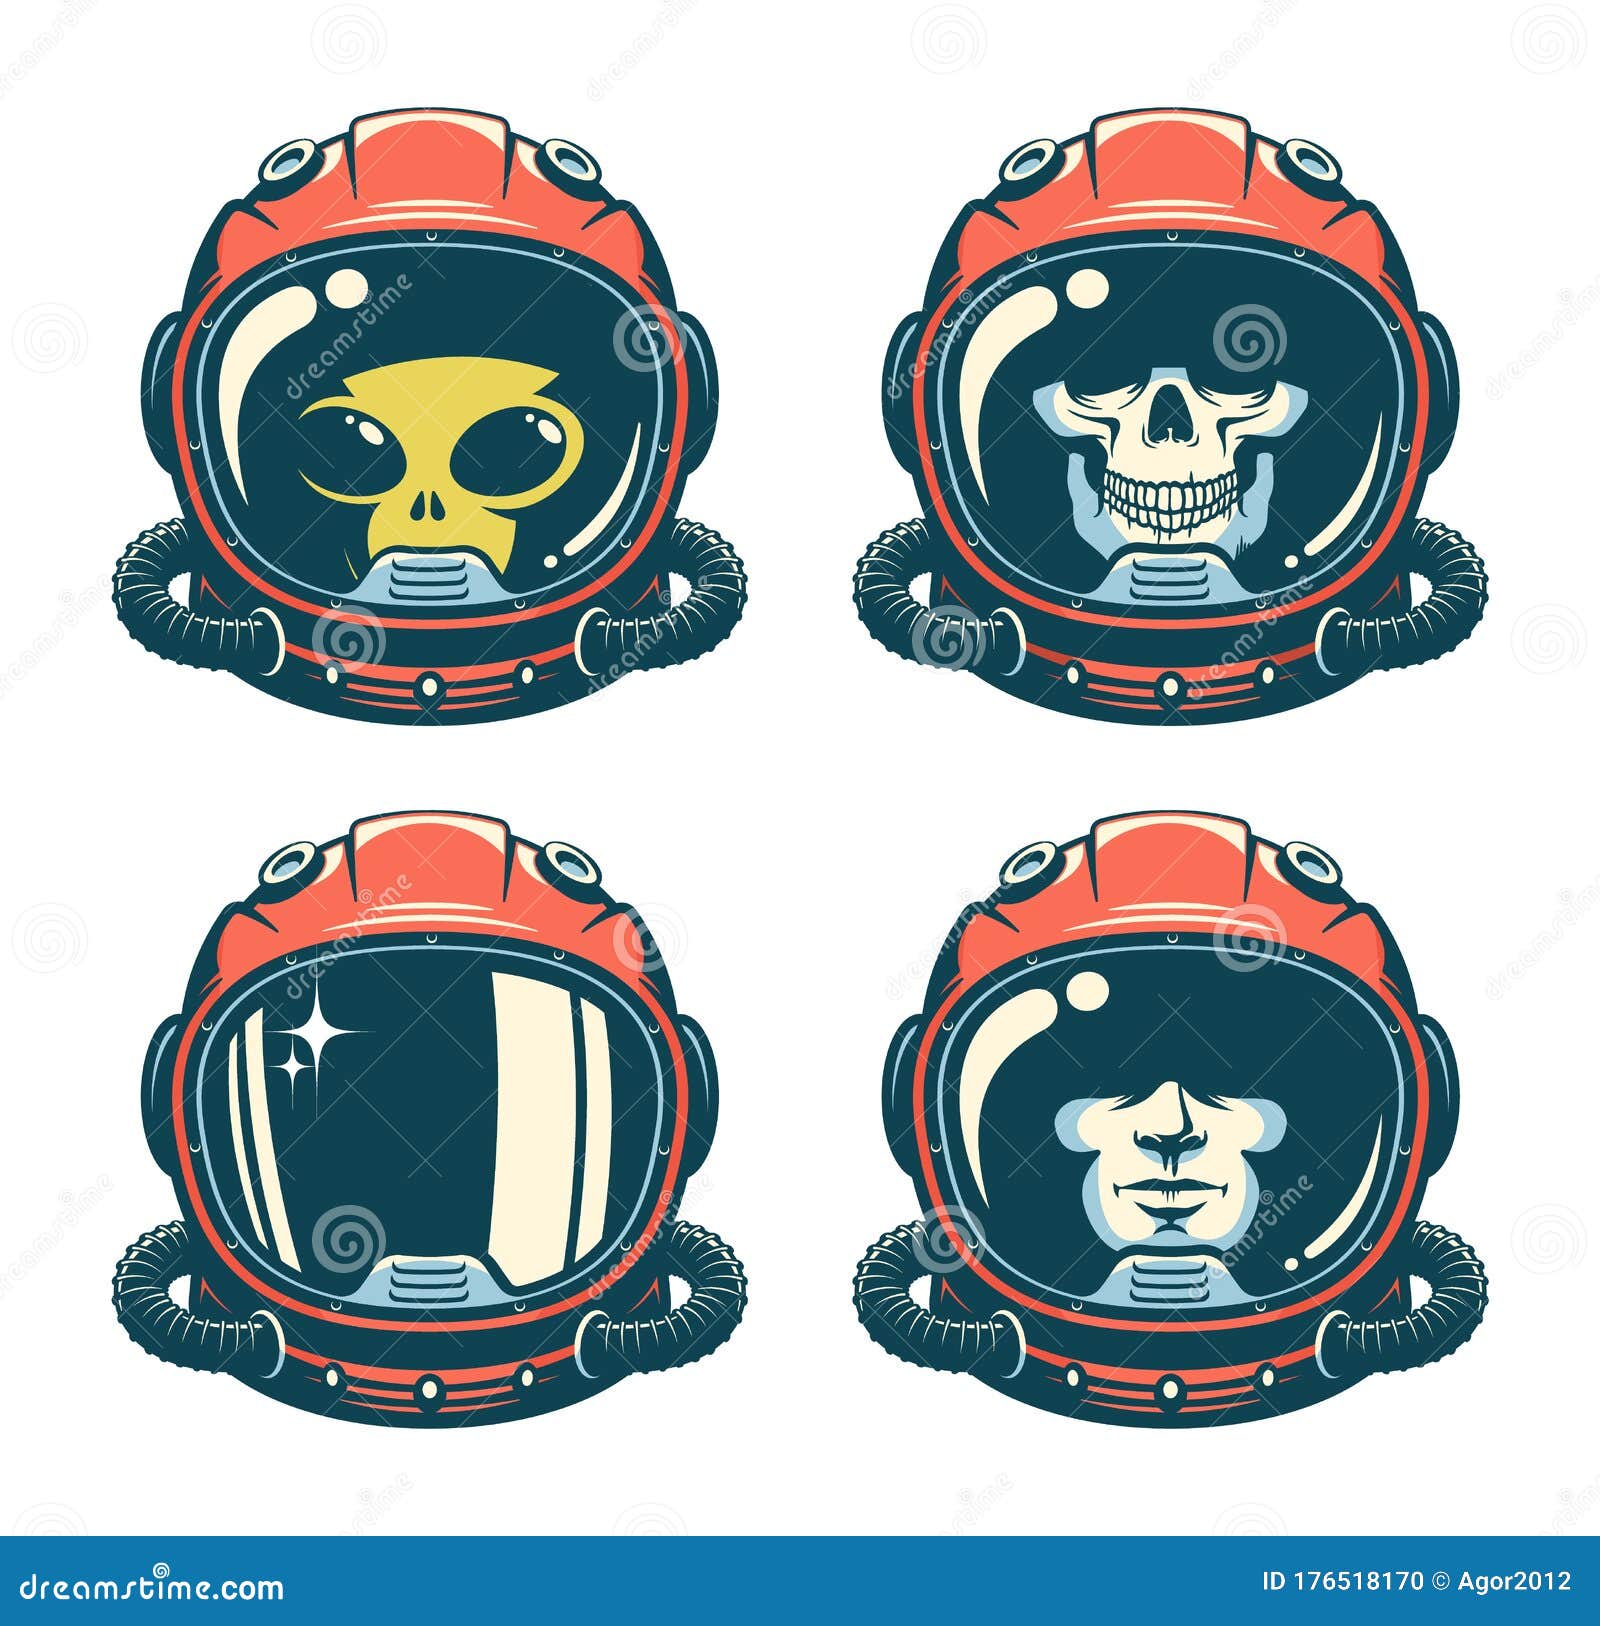 Astronaut Helmet Stock Illustrations 13 768 Astronaut Helmet Stock Illustrations Vectors Clipart Dreamstime